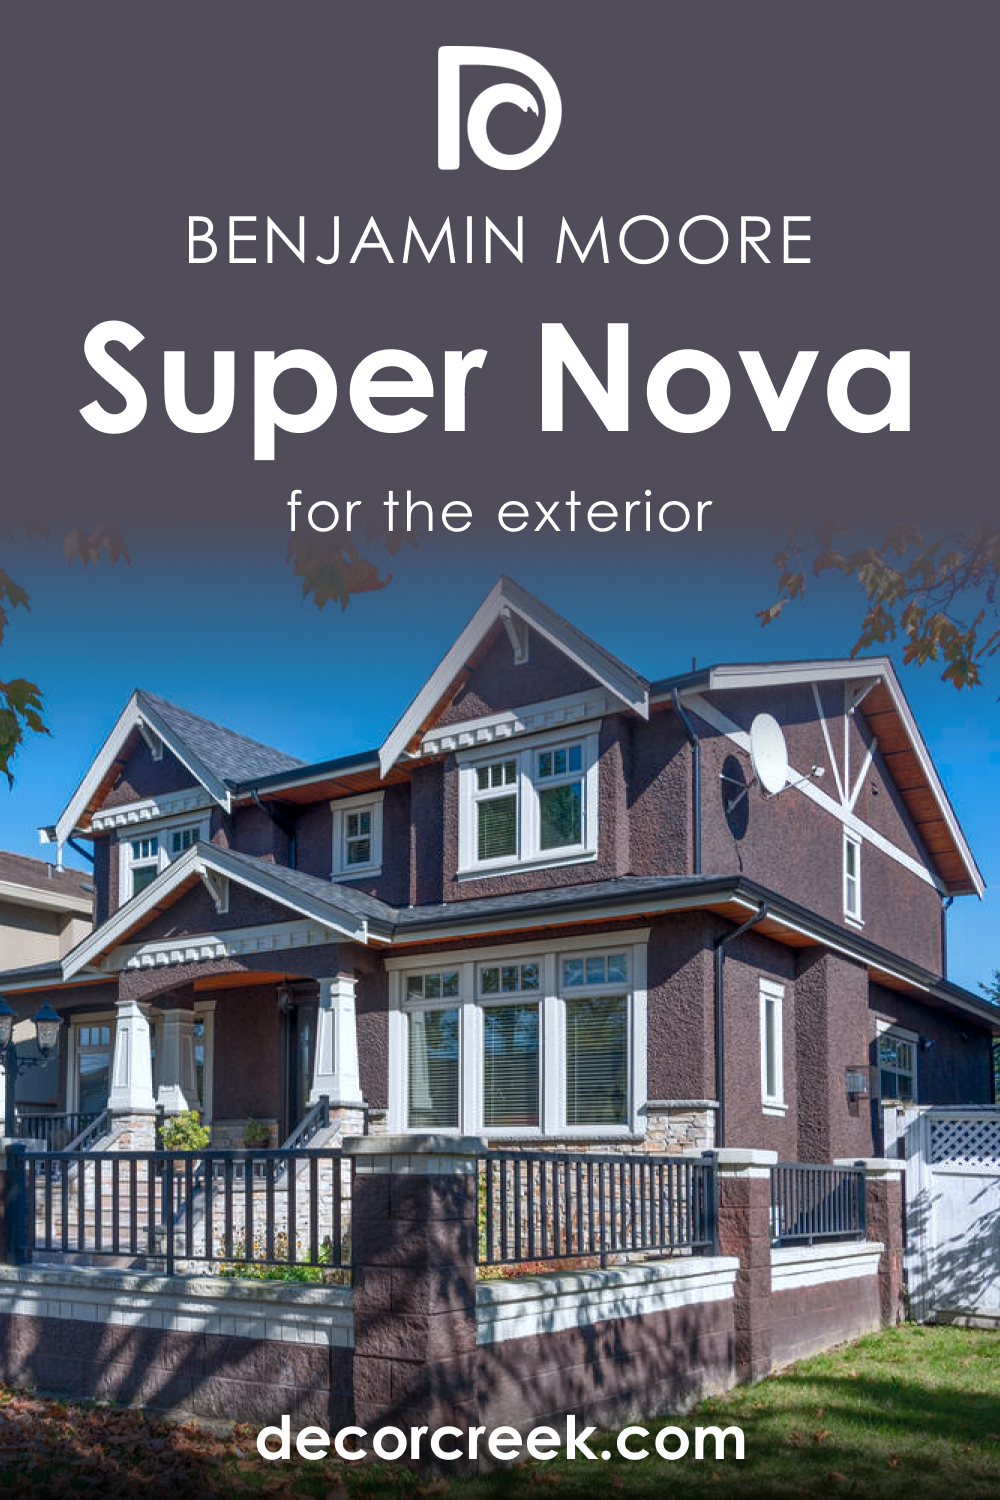 How to Use Super Nova 1414 for an Exterior?